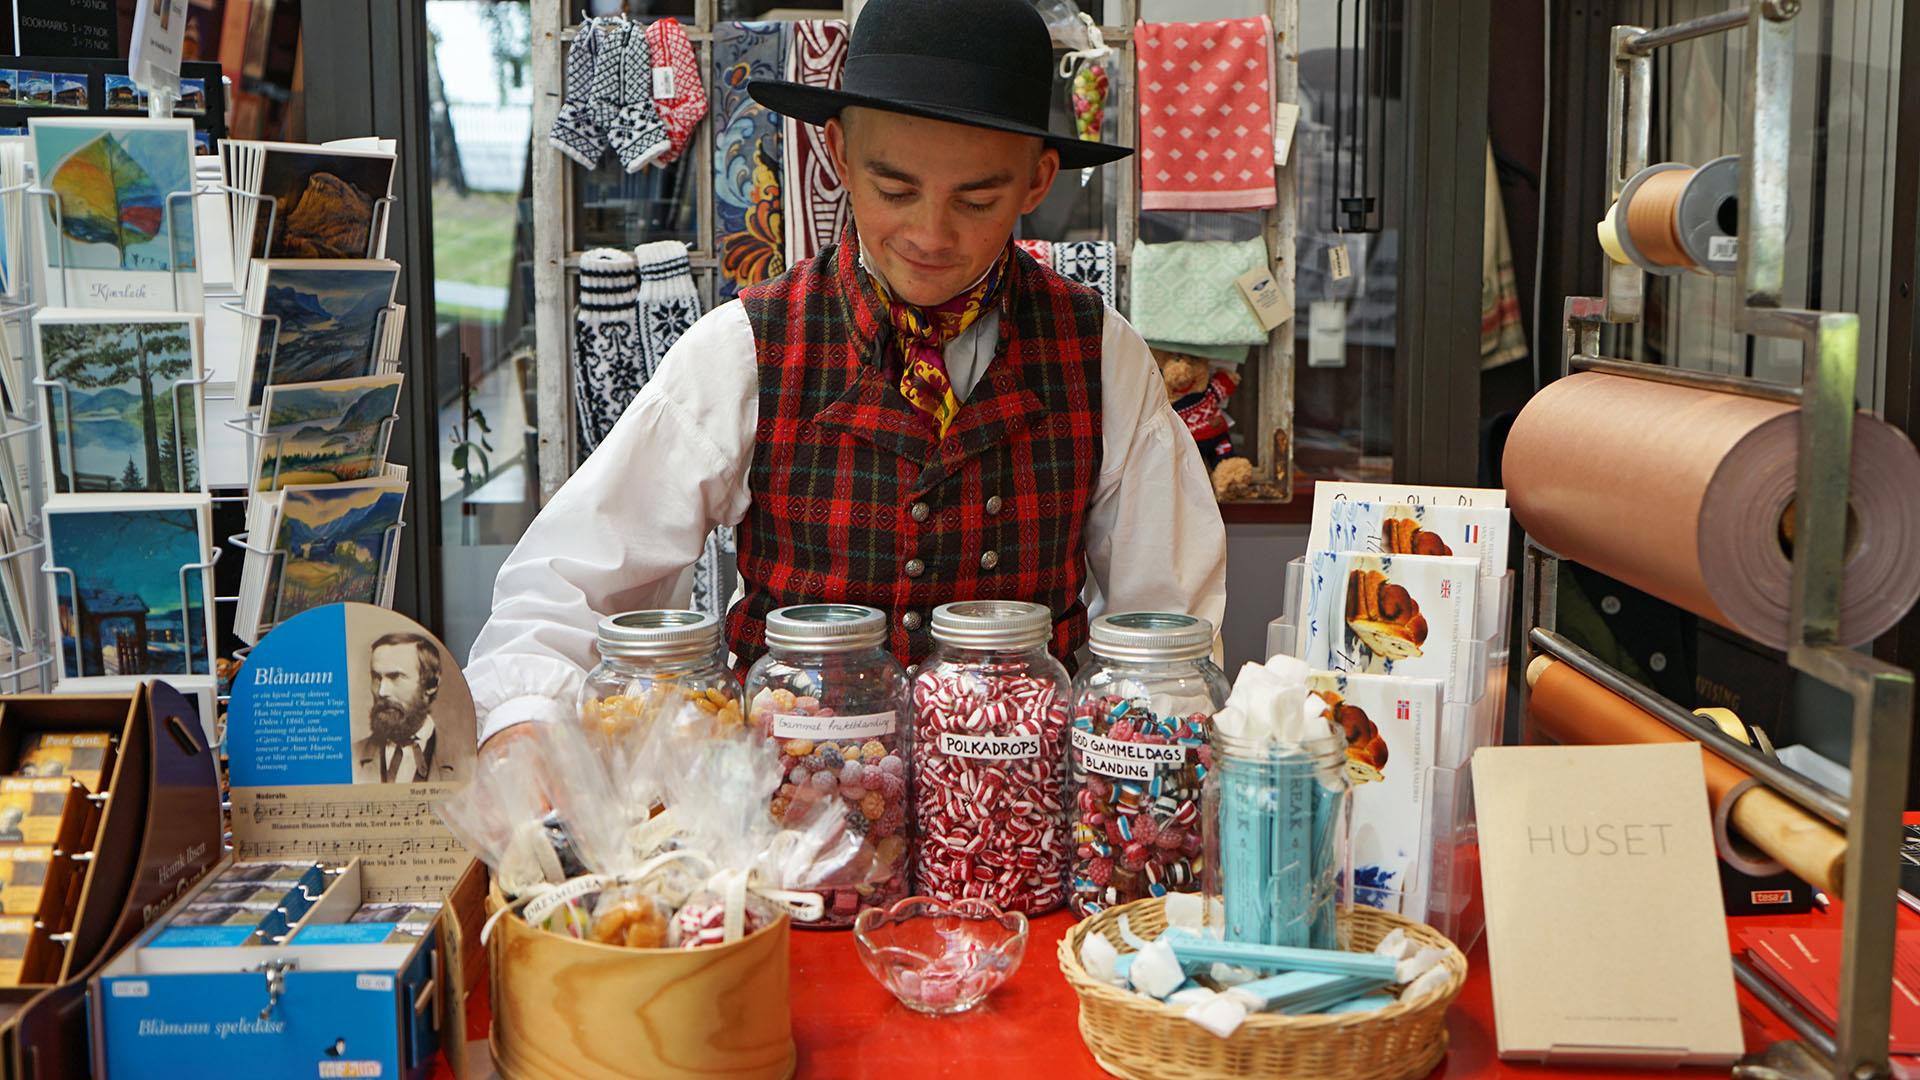 Ein junger Mann in Volkstracht hinter dem Ladentisch in einem Museumsladen mit Bonbons im Glas, traditionellen Strickwaren, Kunstkarten und Büchern.